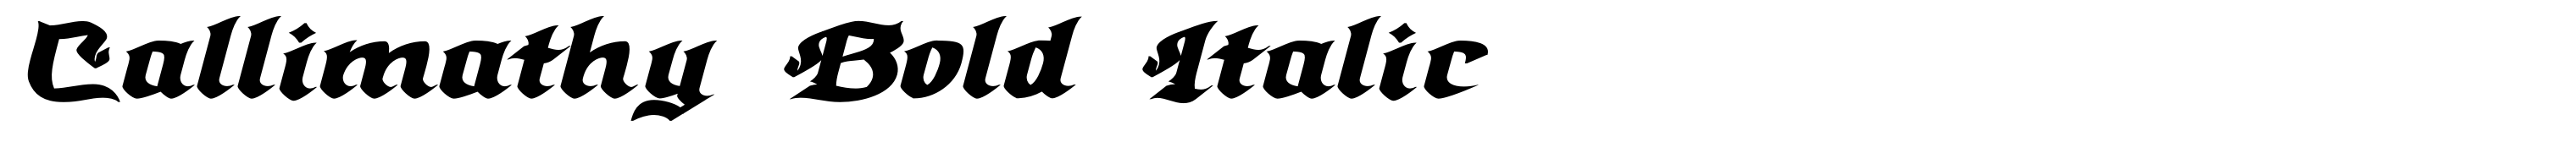 Callimathy Bold Italic